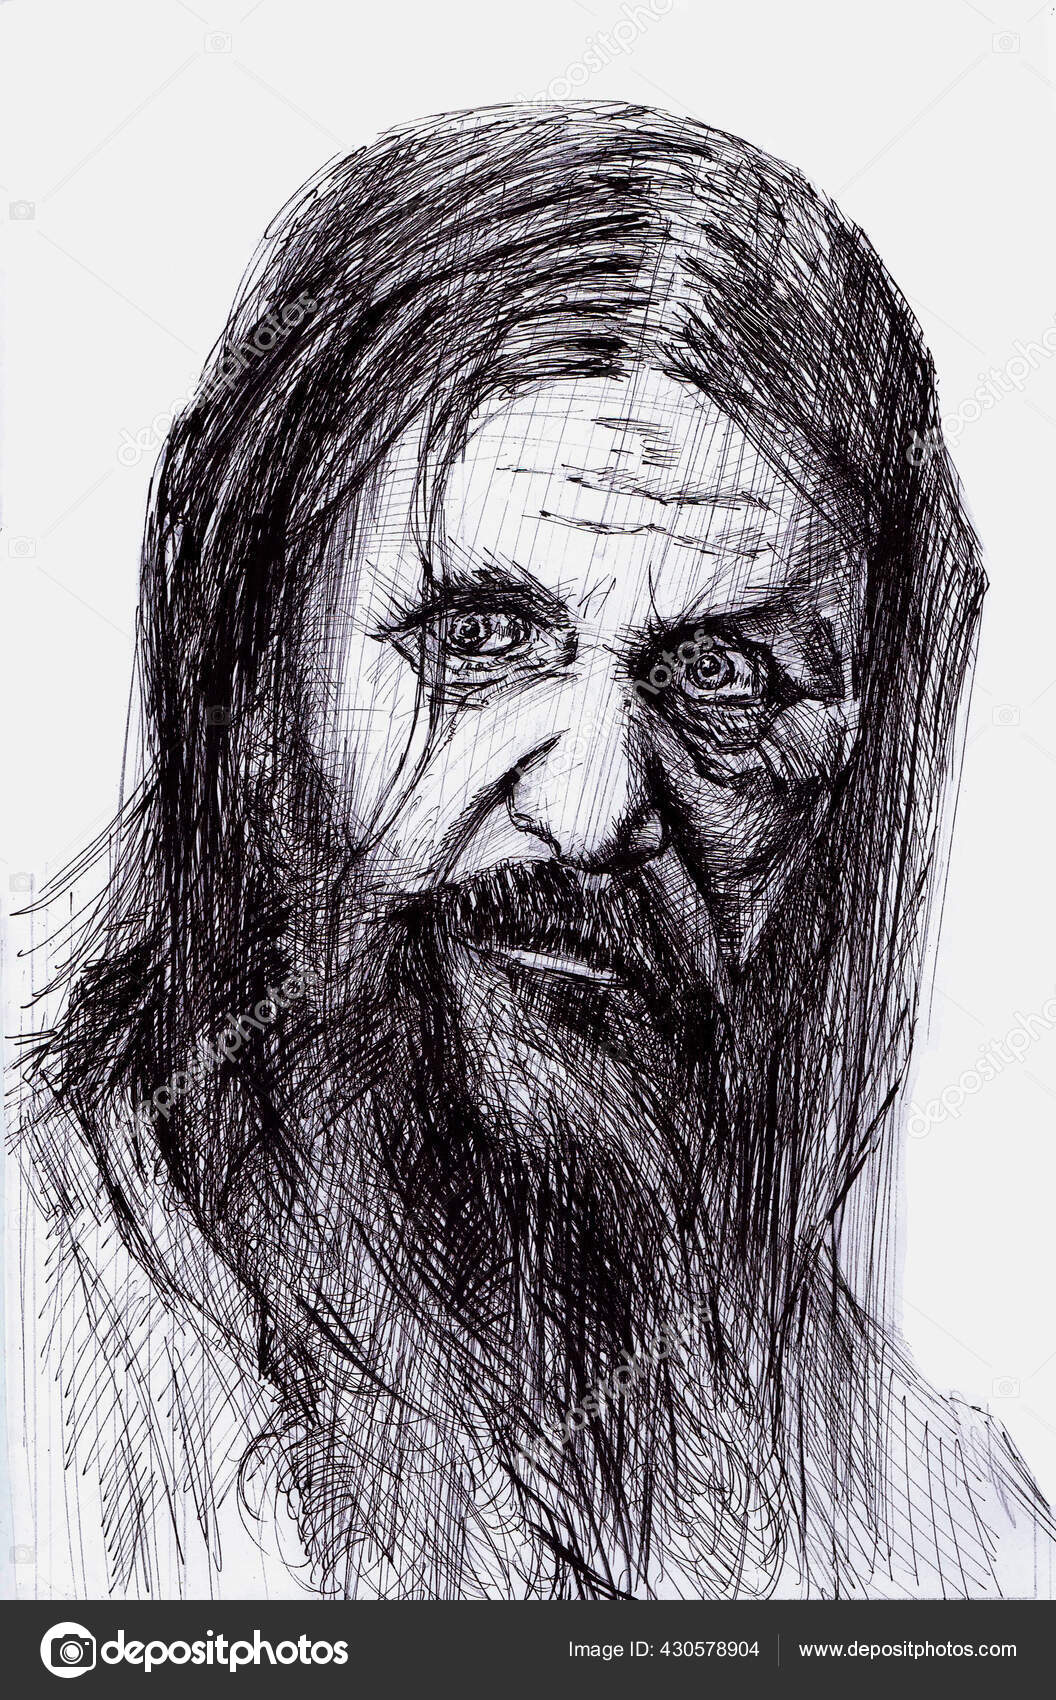 Rasputin bilder